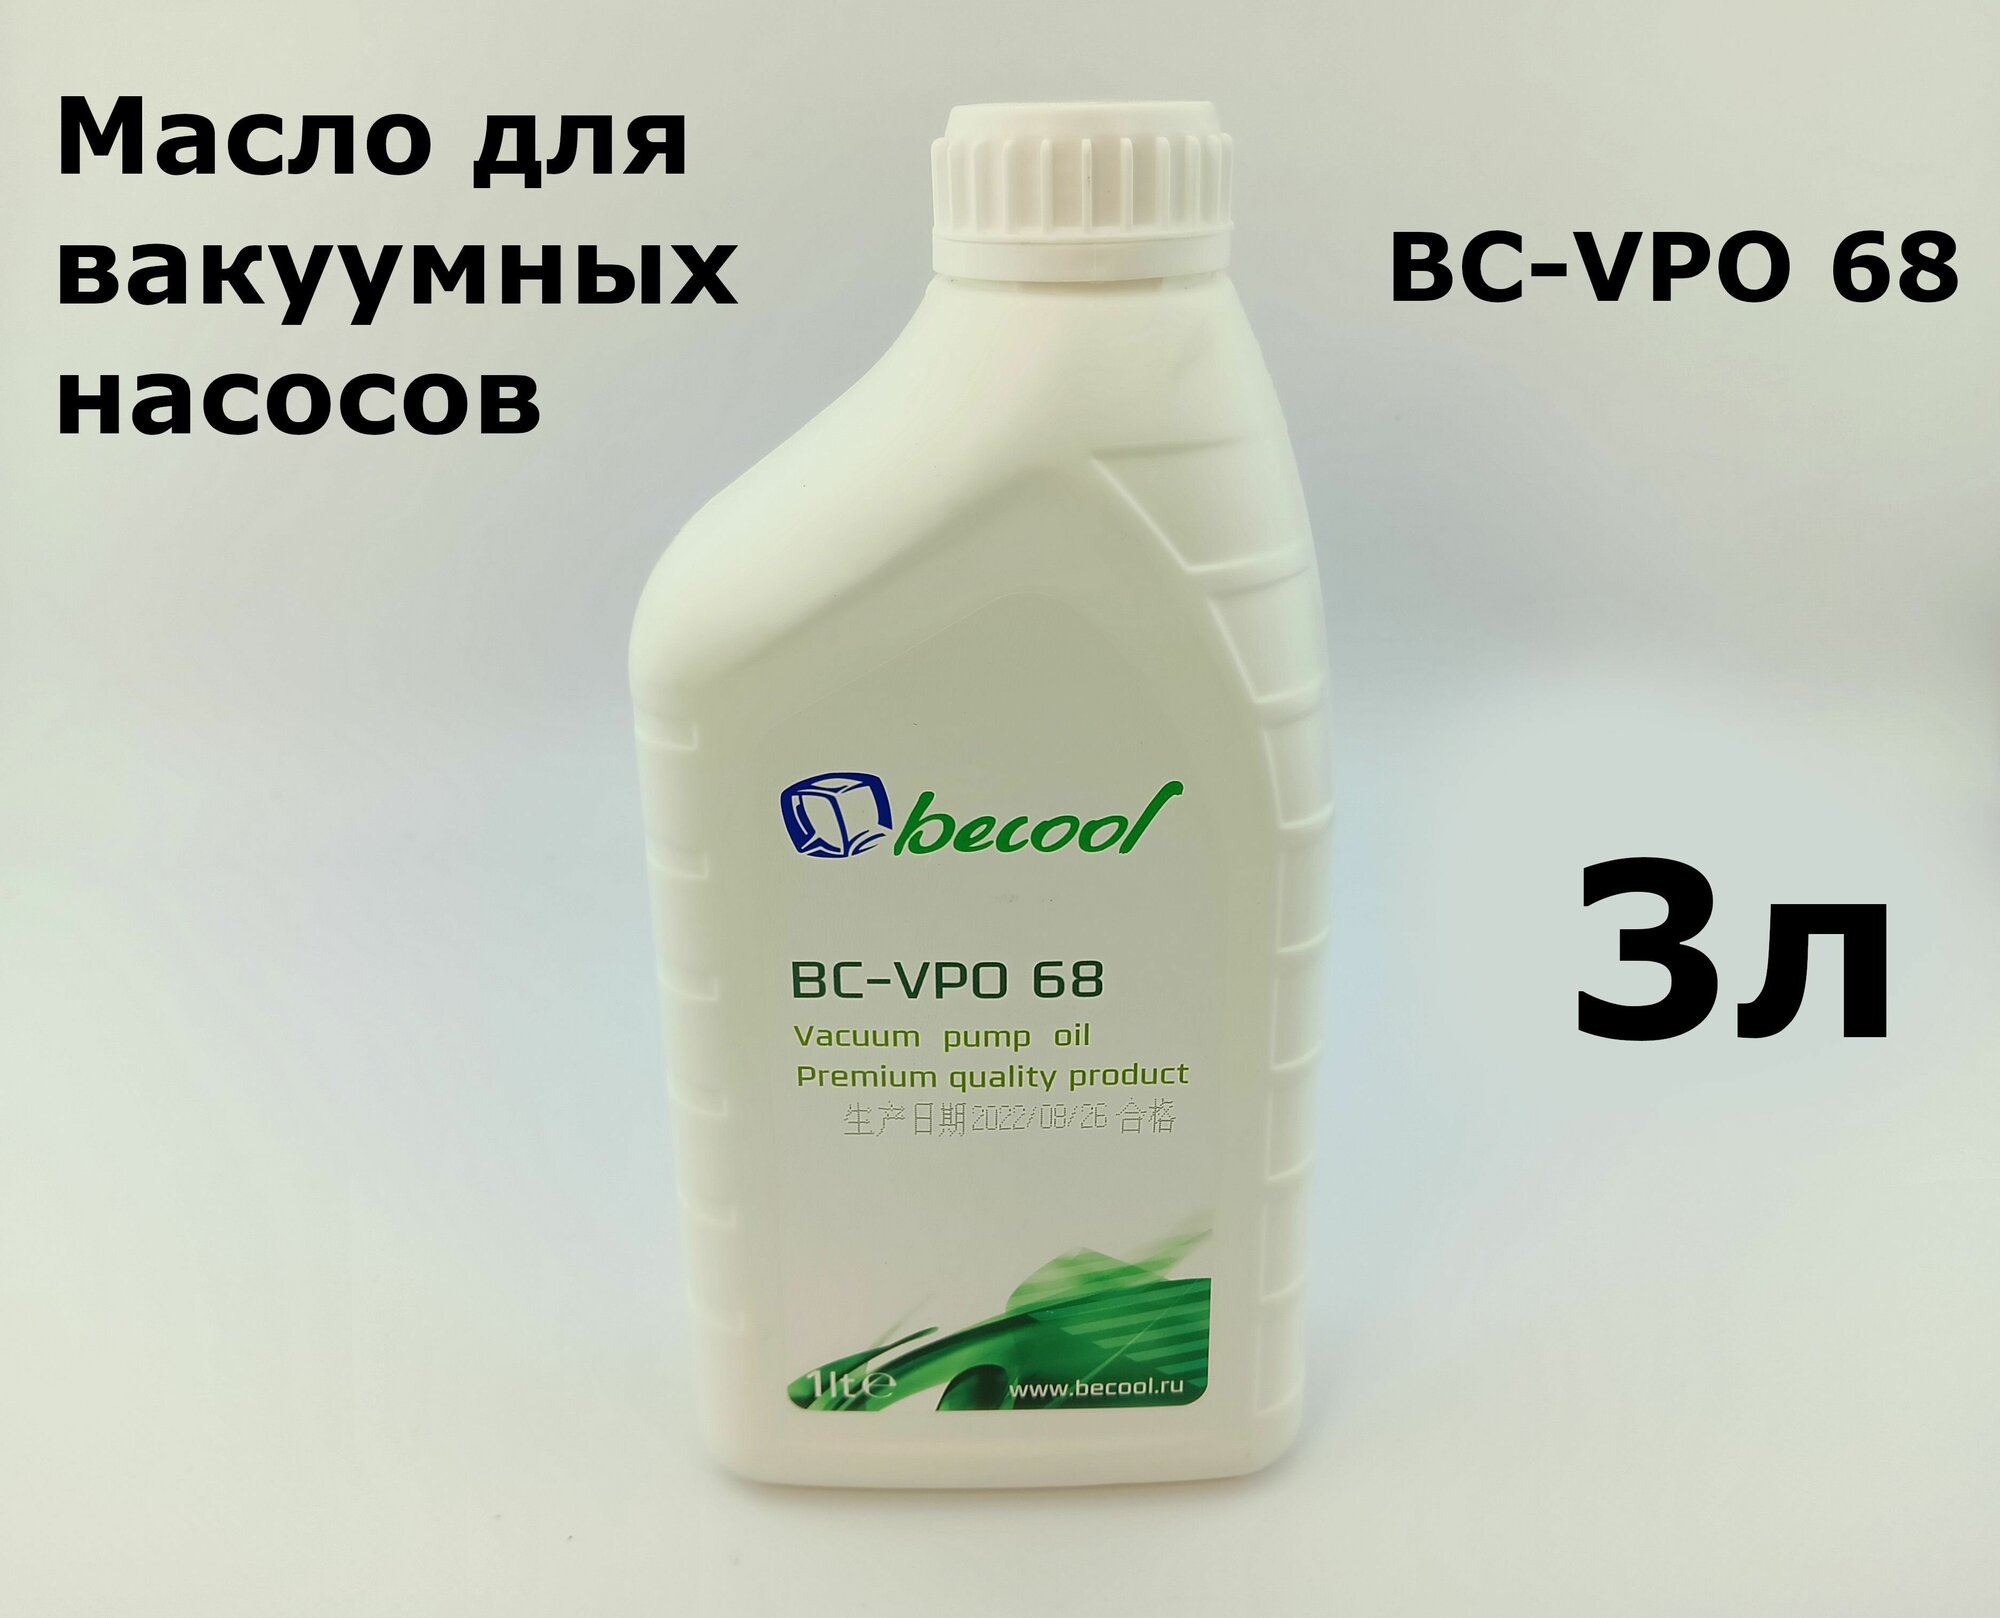 Масло для вакуумных насосов Becool BC-VPO 68 - 3л